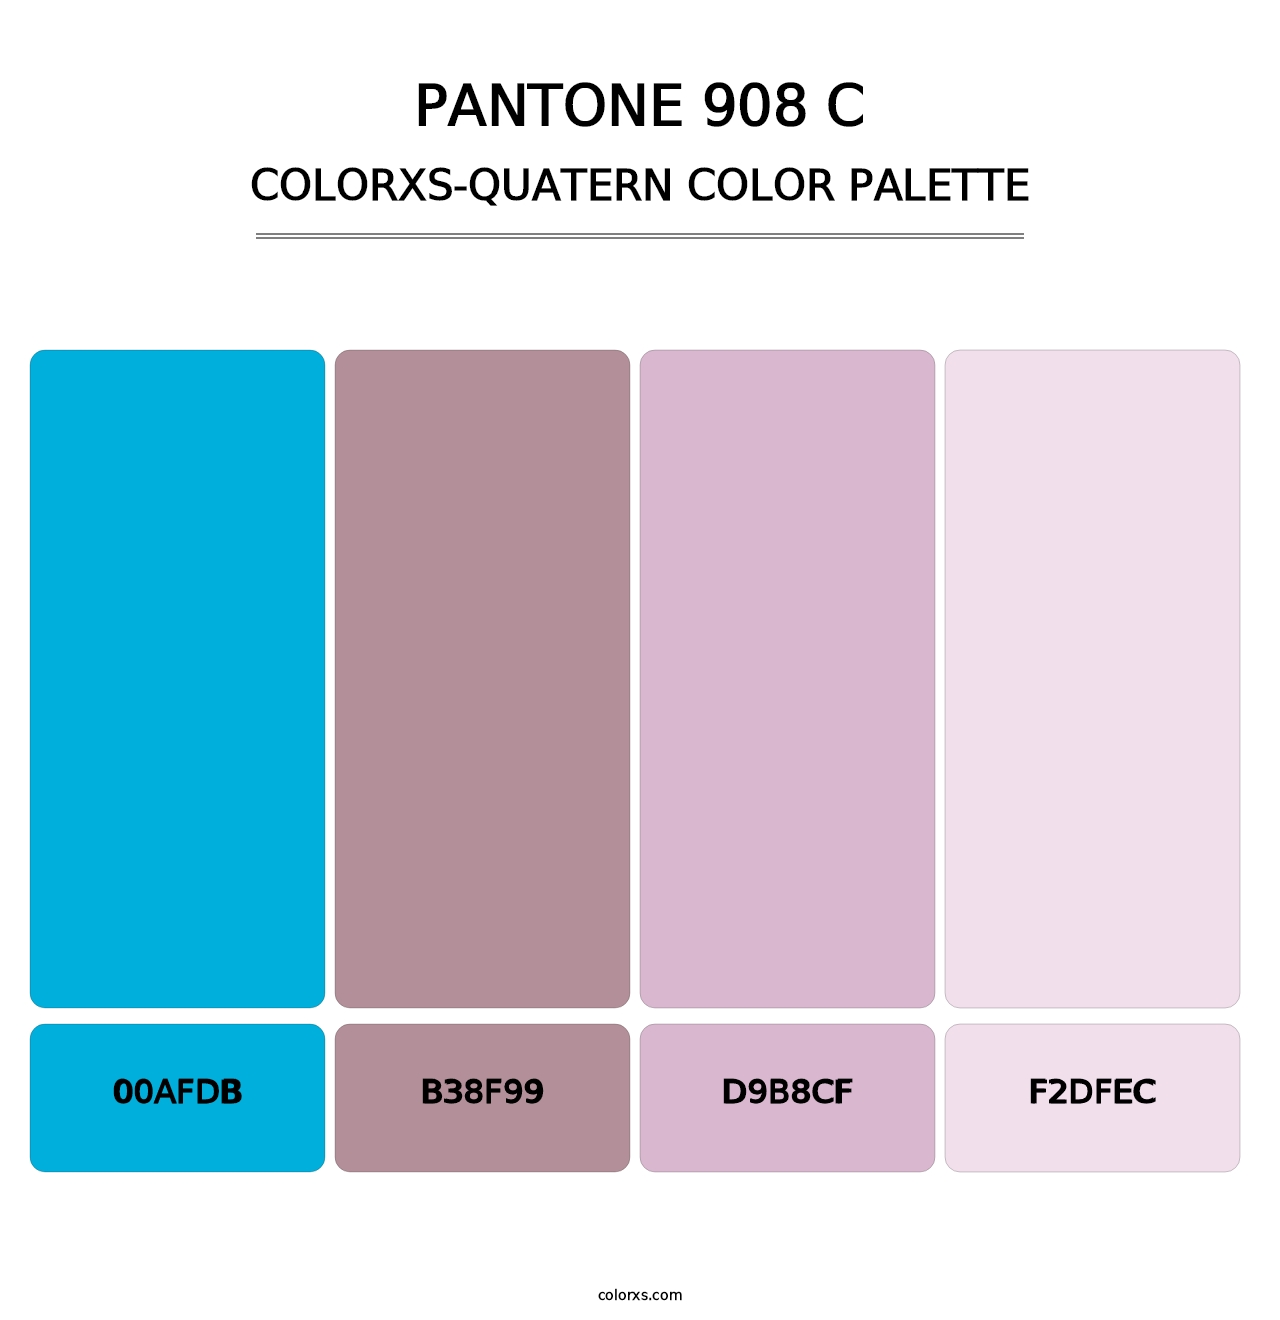 PANTONE 908 C - Colorxs Quatern Palette